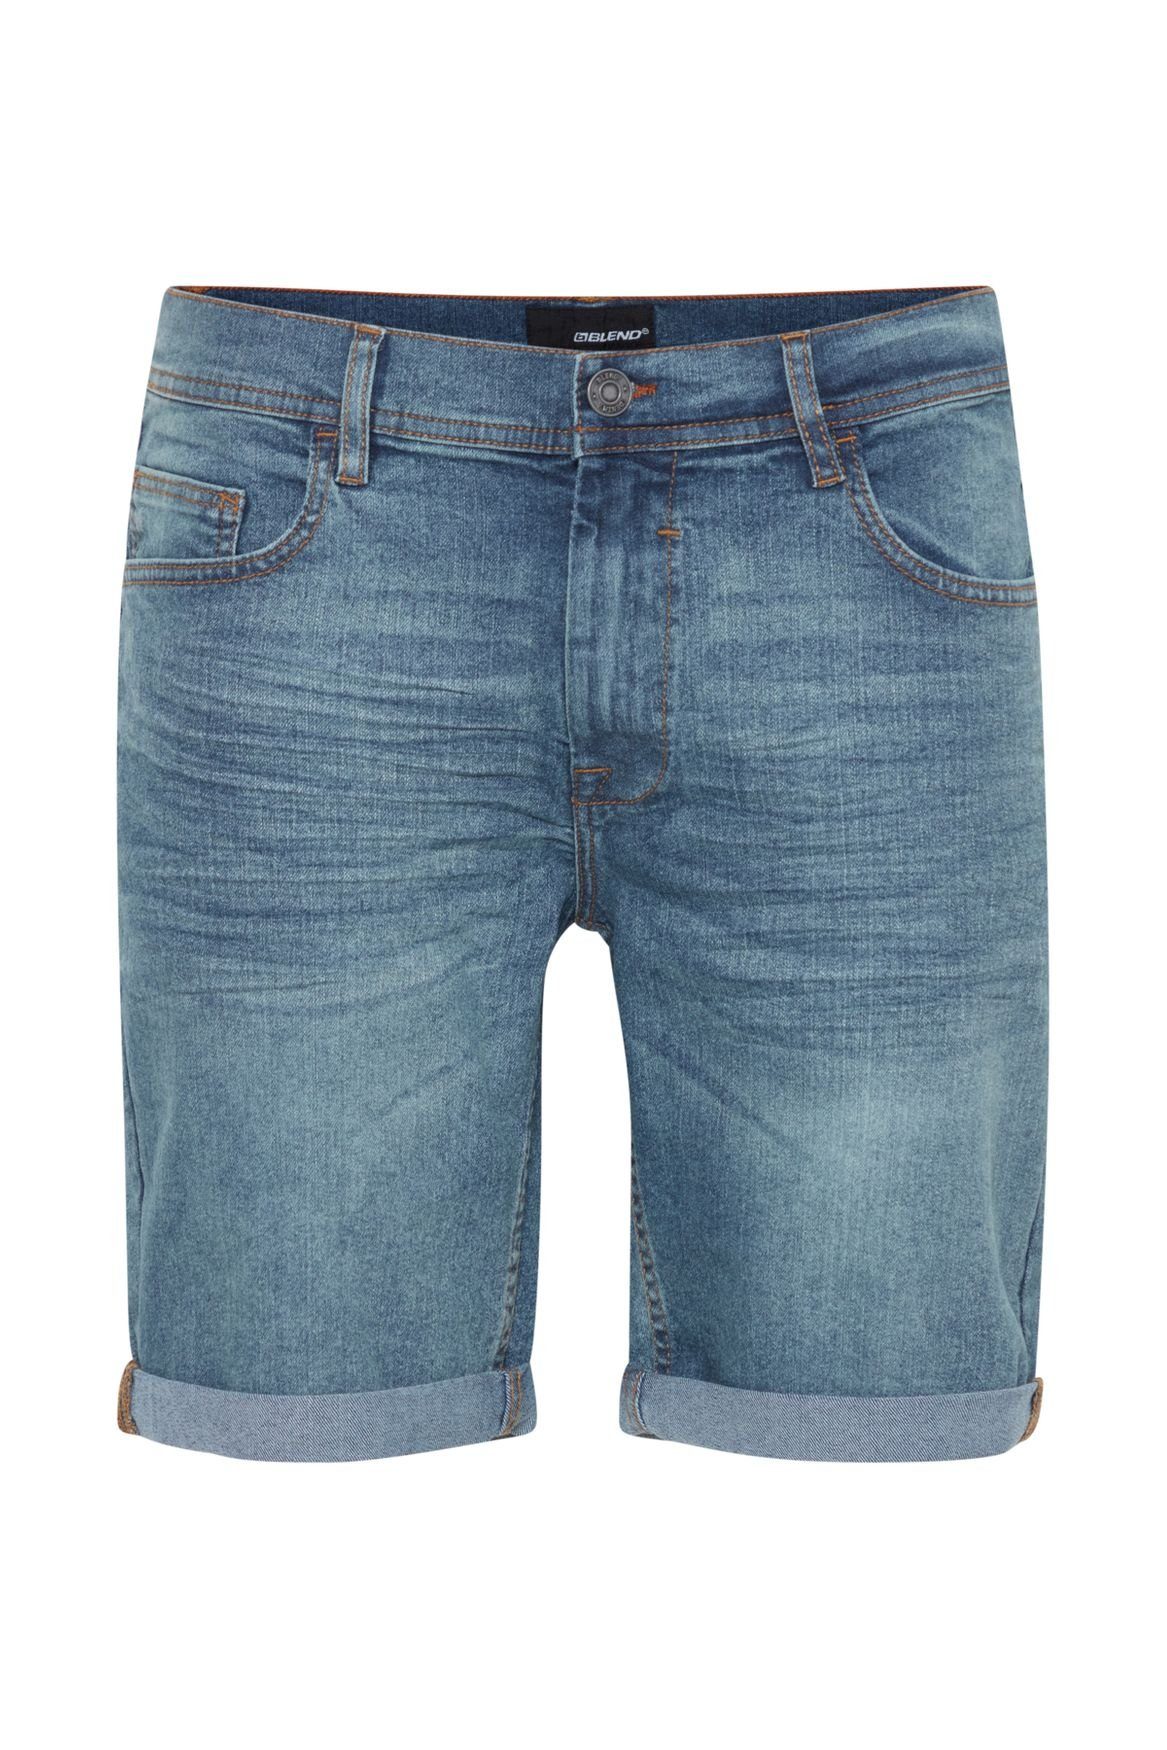 Blend Jeansshorts Denim Capri Jeans 5087 Shorts Bermuda Blau Hose 3/4 in